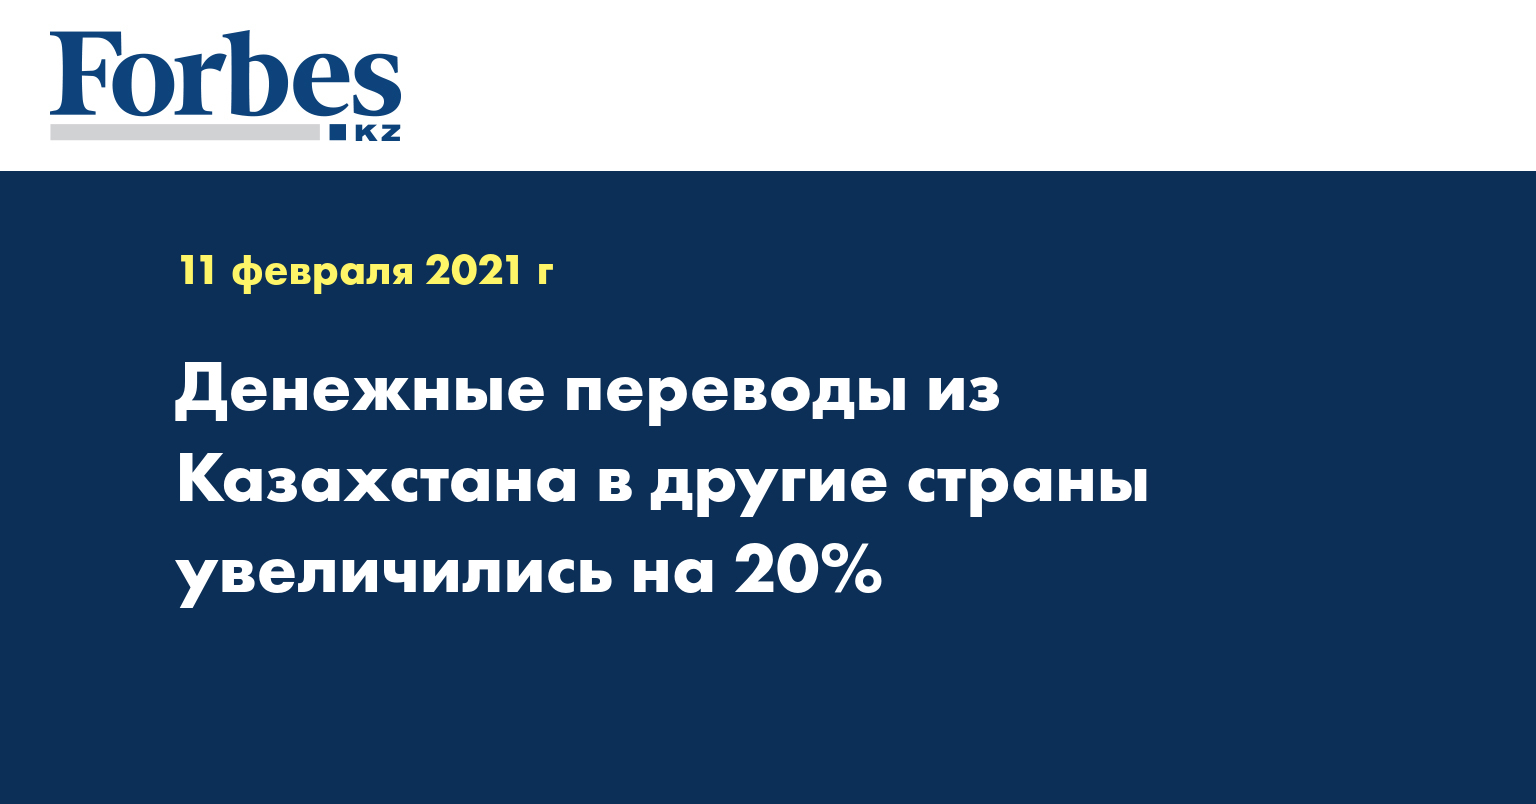 Денежные переводы из Казахстана в другие страны увеличились на 20%